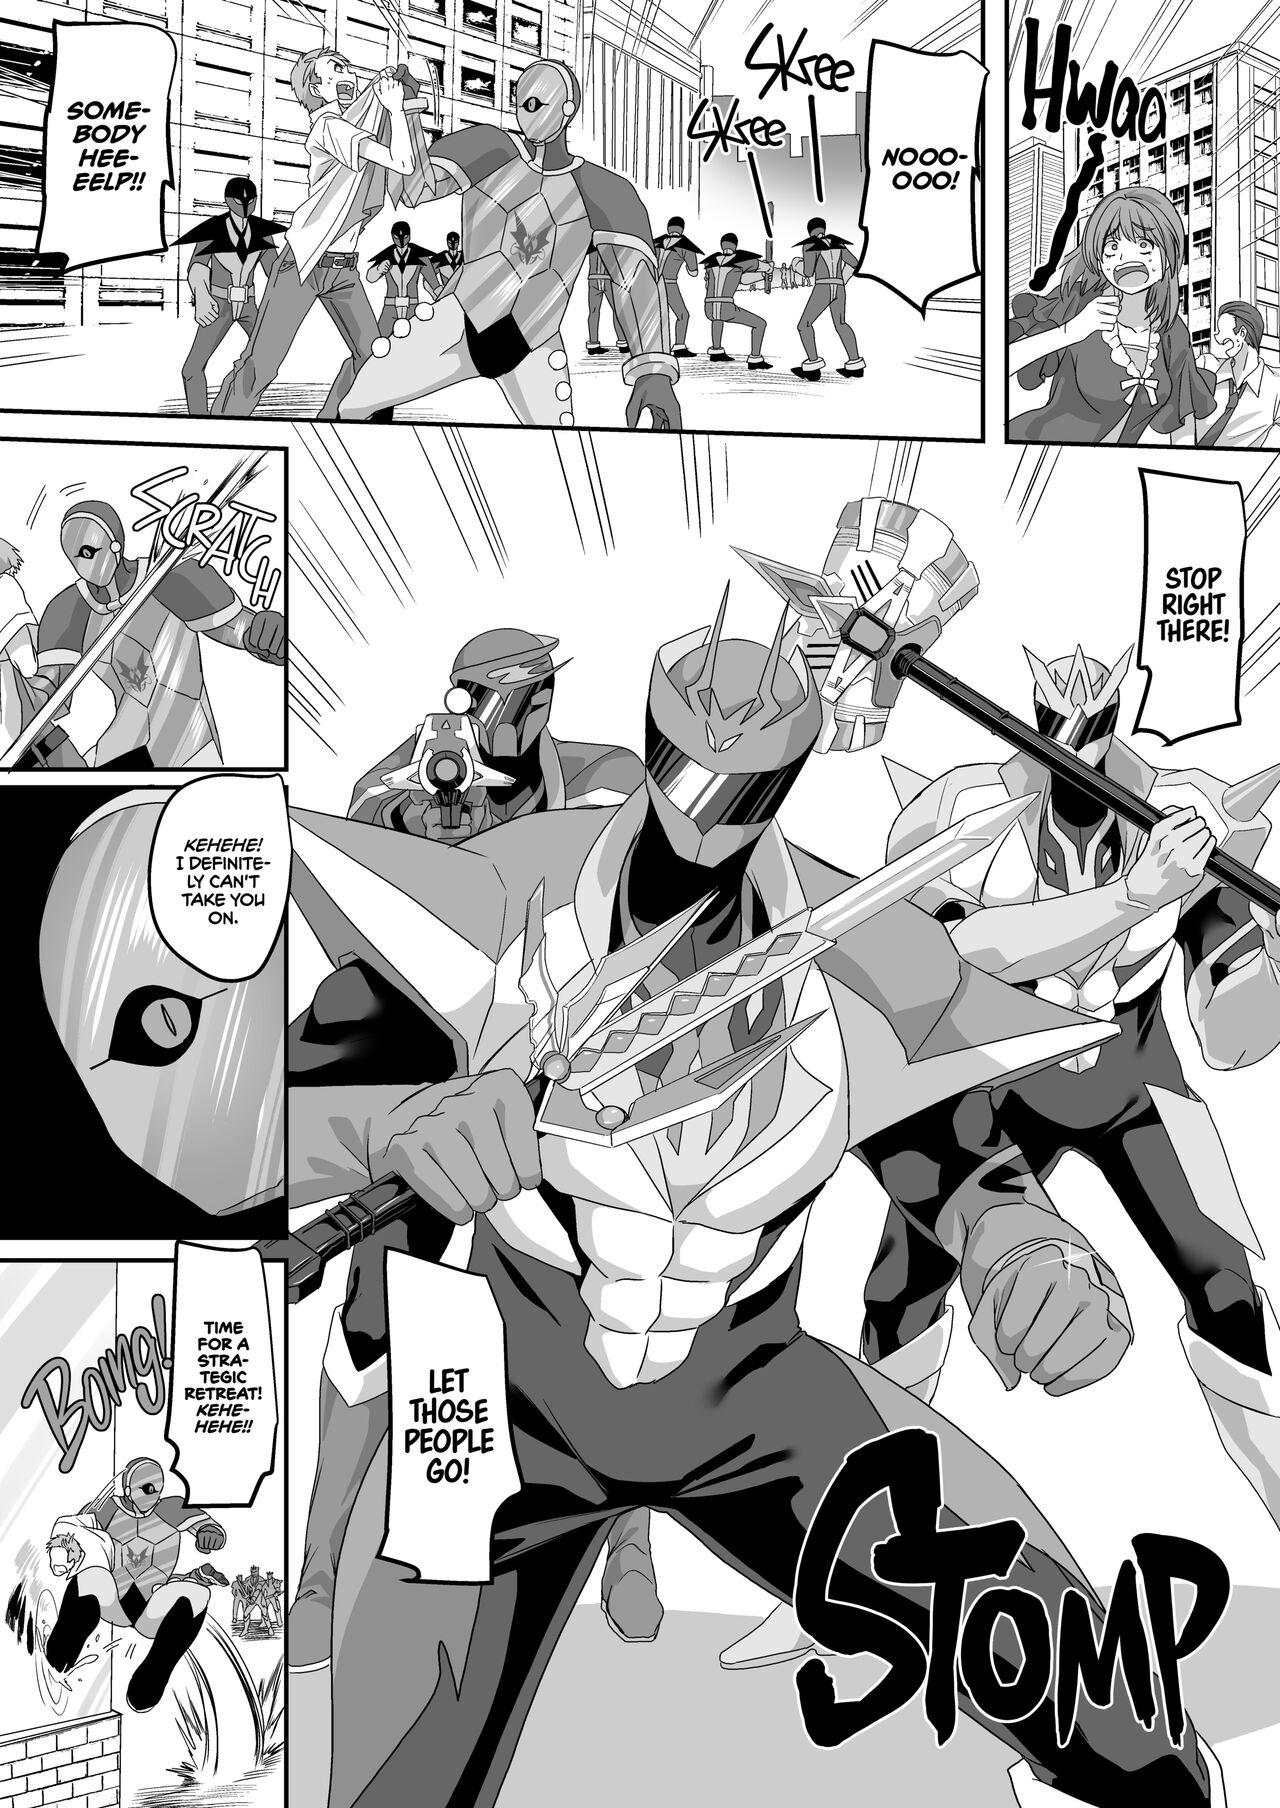 Saikyou no Seigi no Hero wa Kagami no Naka de wa Saijaku no Kaijin | The Strongest Hero of Justice is the Weakest Villain in the Mirror 4